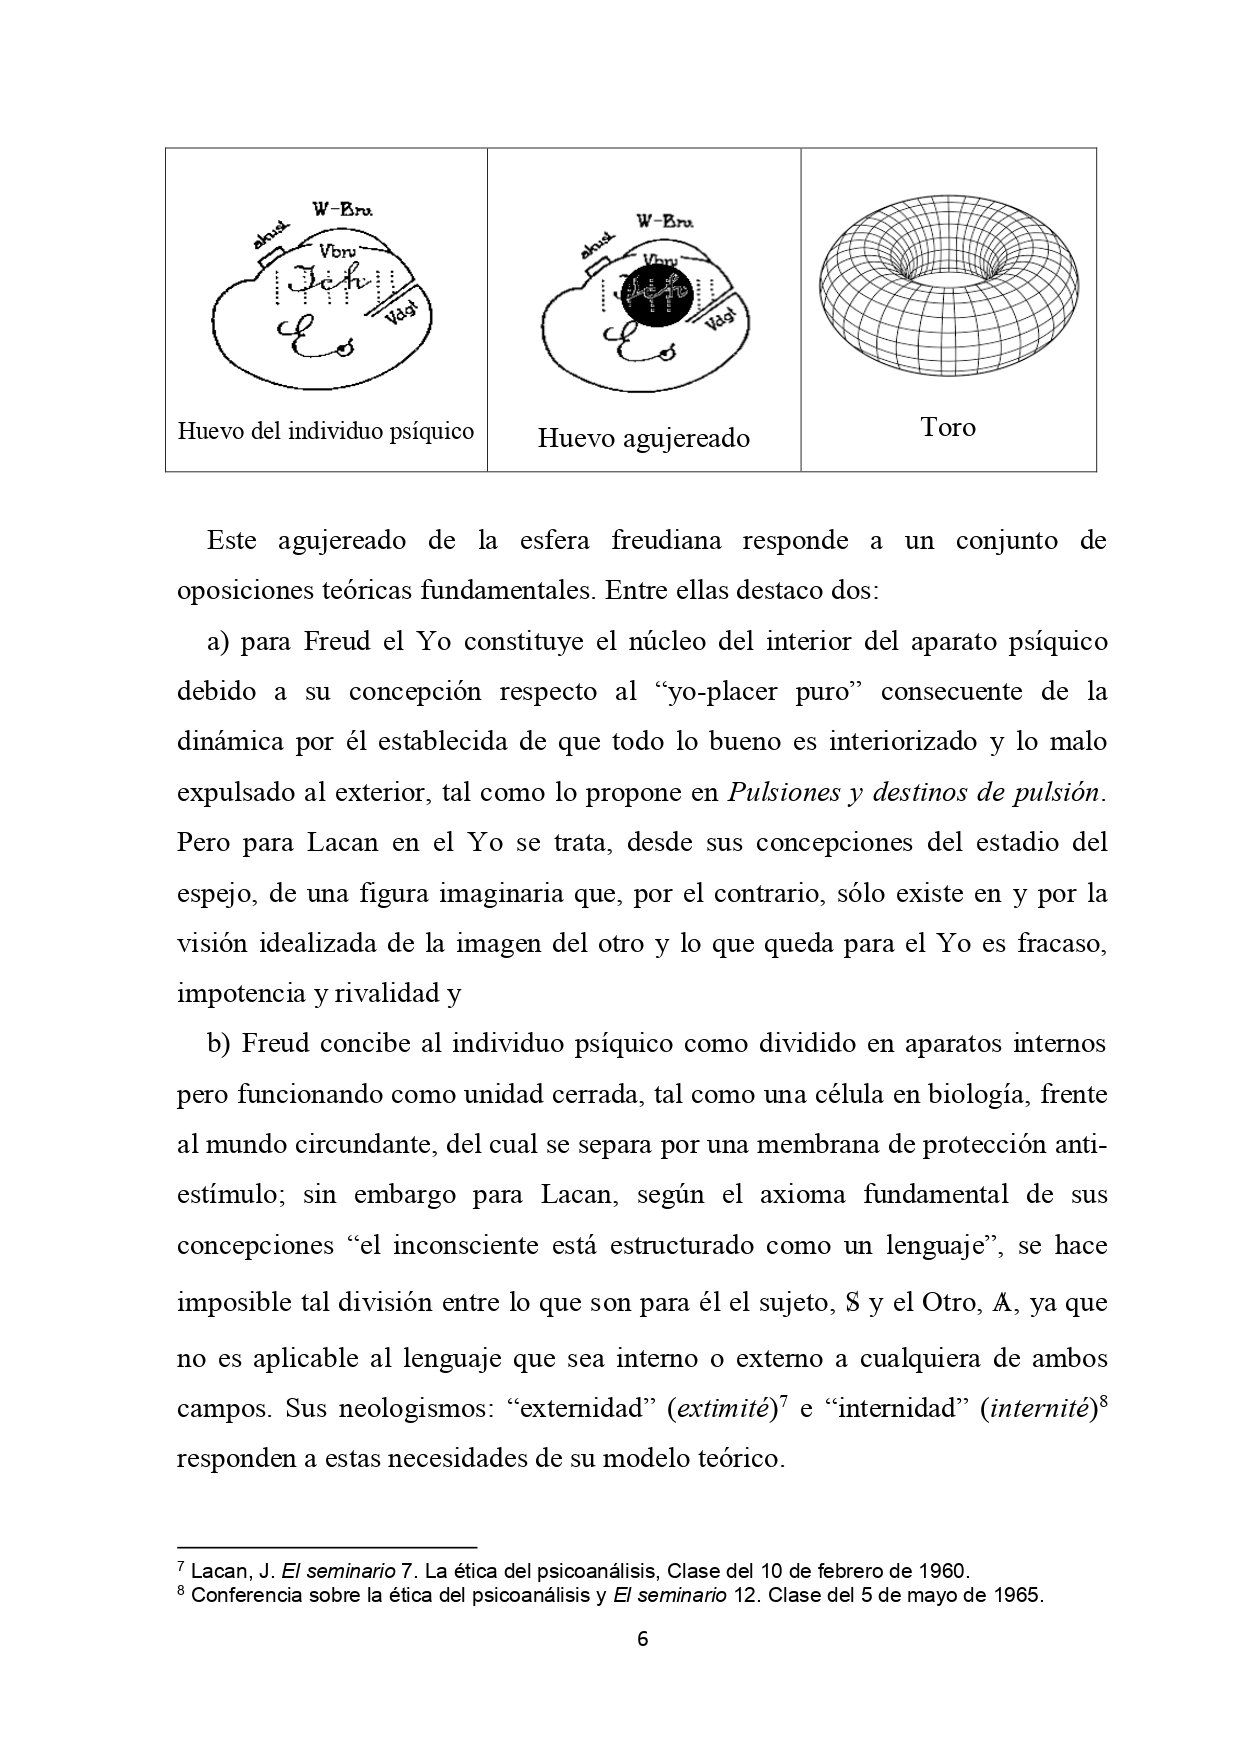 101_La topología de Lacan APOLa 16-4-2020 B (1)_page-0006